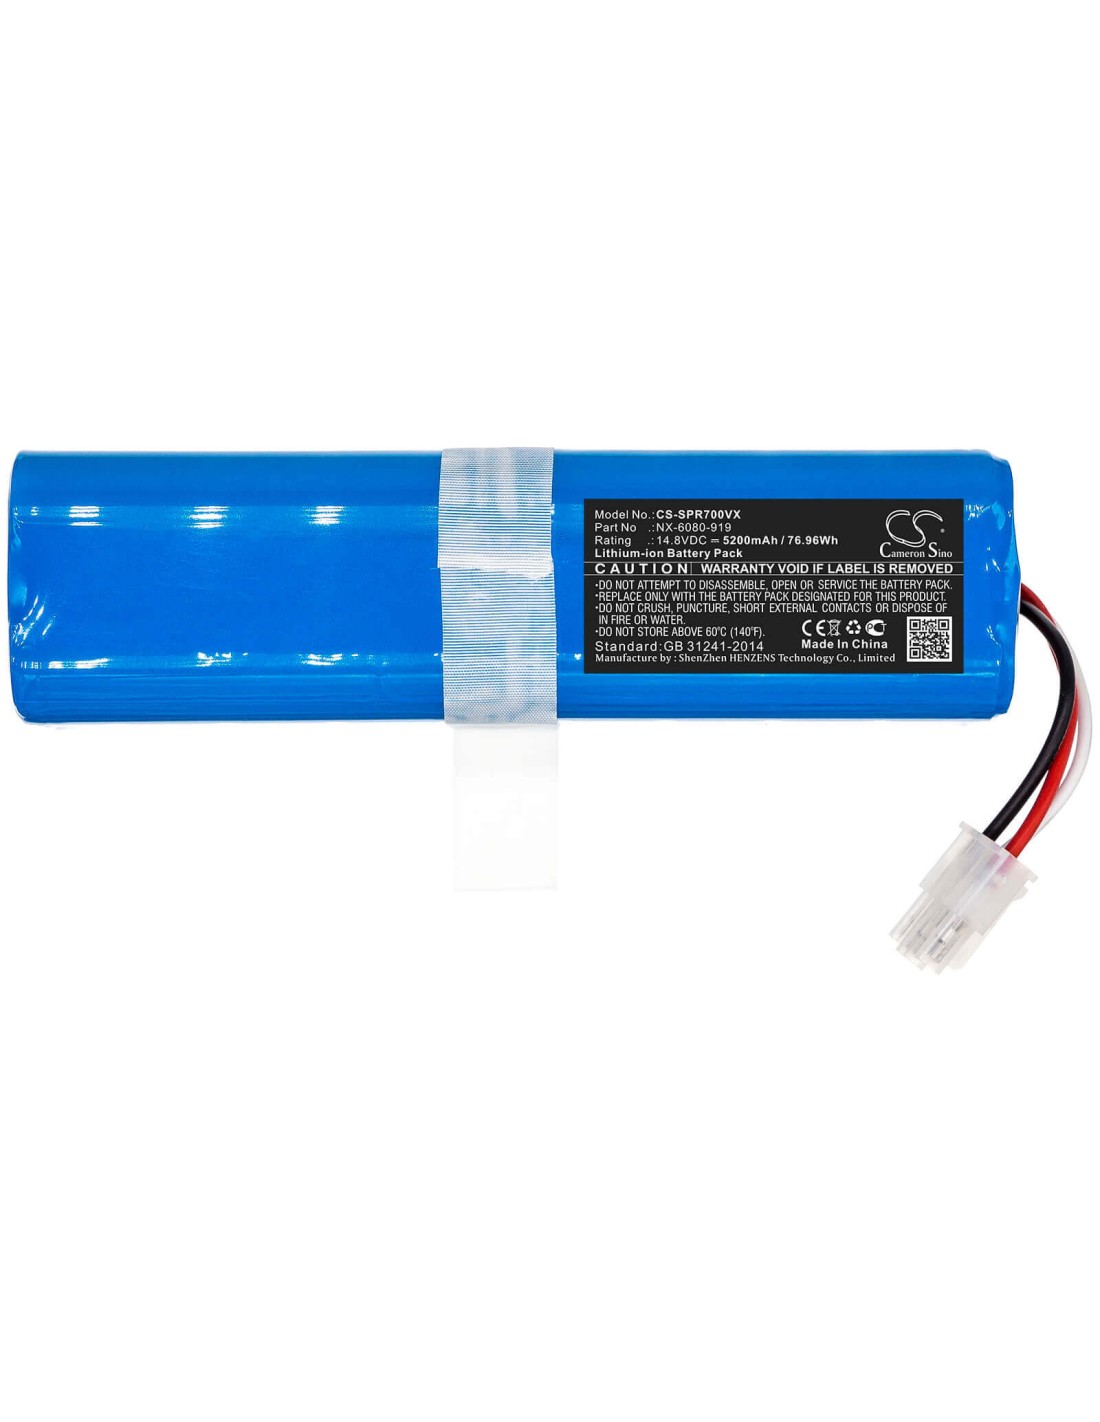 Battery for Sichler, Pcr-7000 14.8V, 5200mAh - 76.96Wh